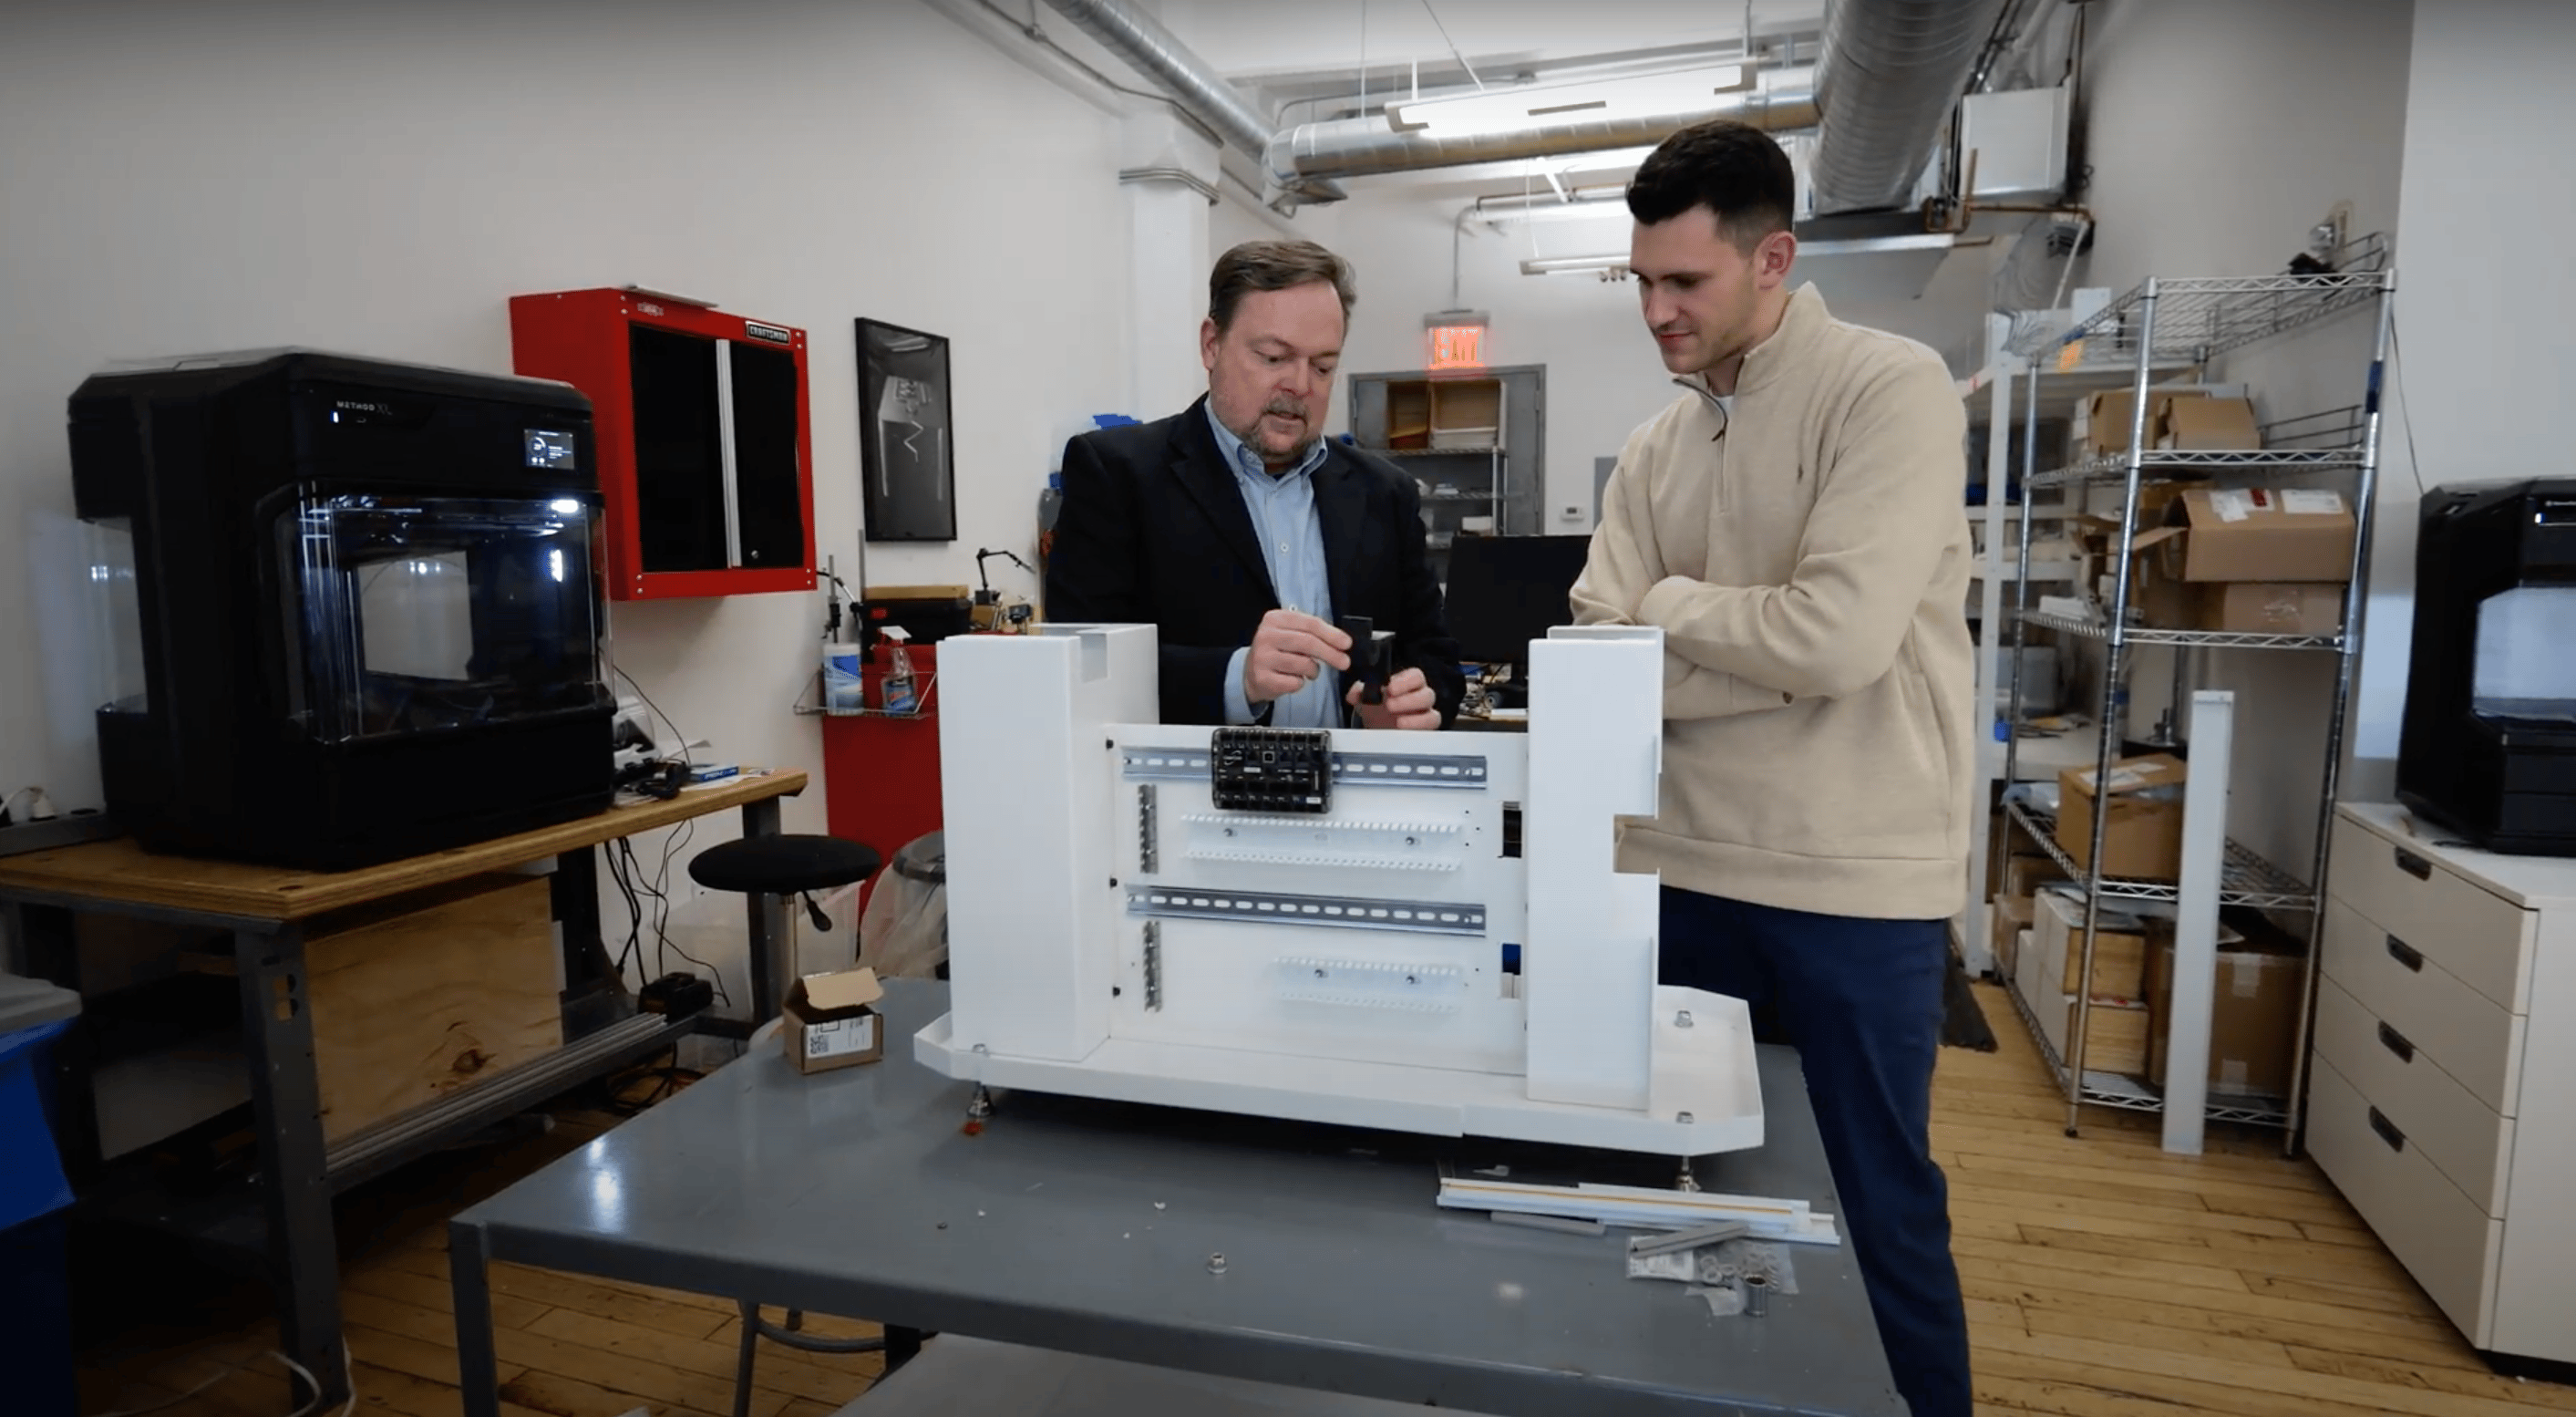 Dizajnersko inženjerska firma Pensa je nedavno dodala 3D štampač Method XL svom arsenalu kako bi unapredila procese prototipiranja i istraživanja i razvoja